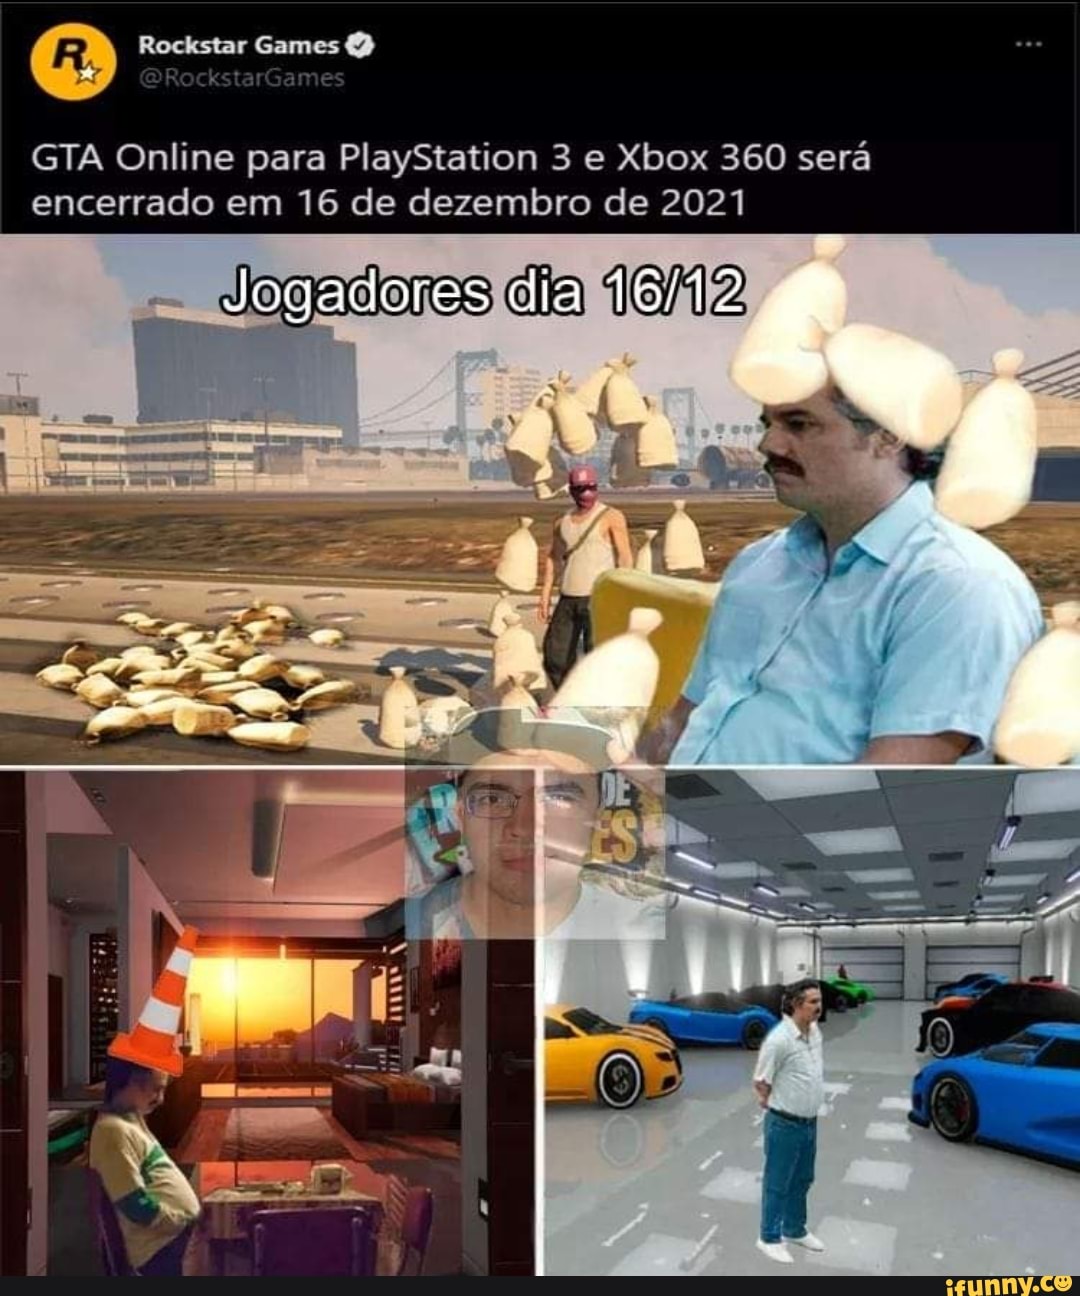 GTA Online será encerrado para PlayStation 3 e Xbox 360 em dezembro